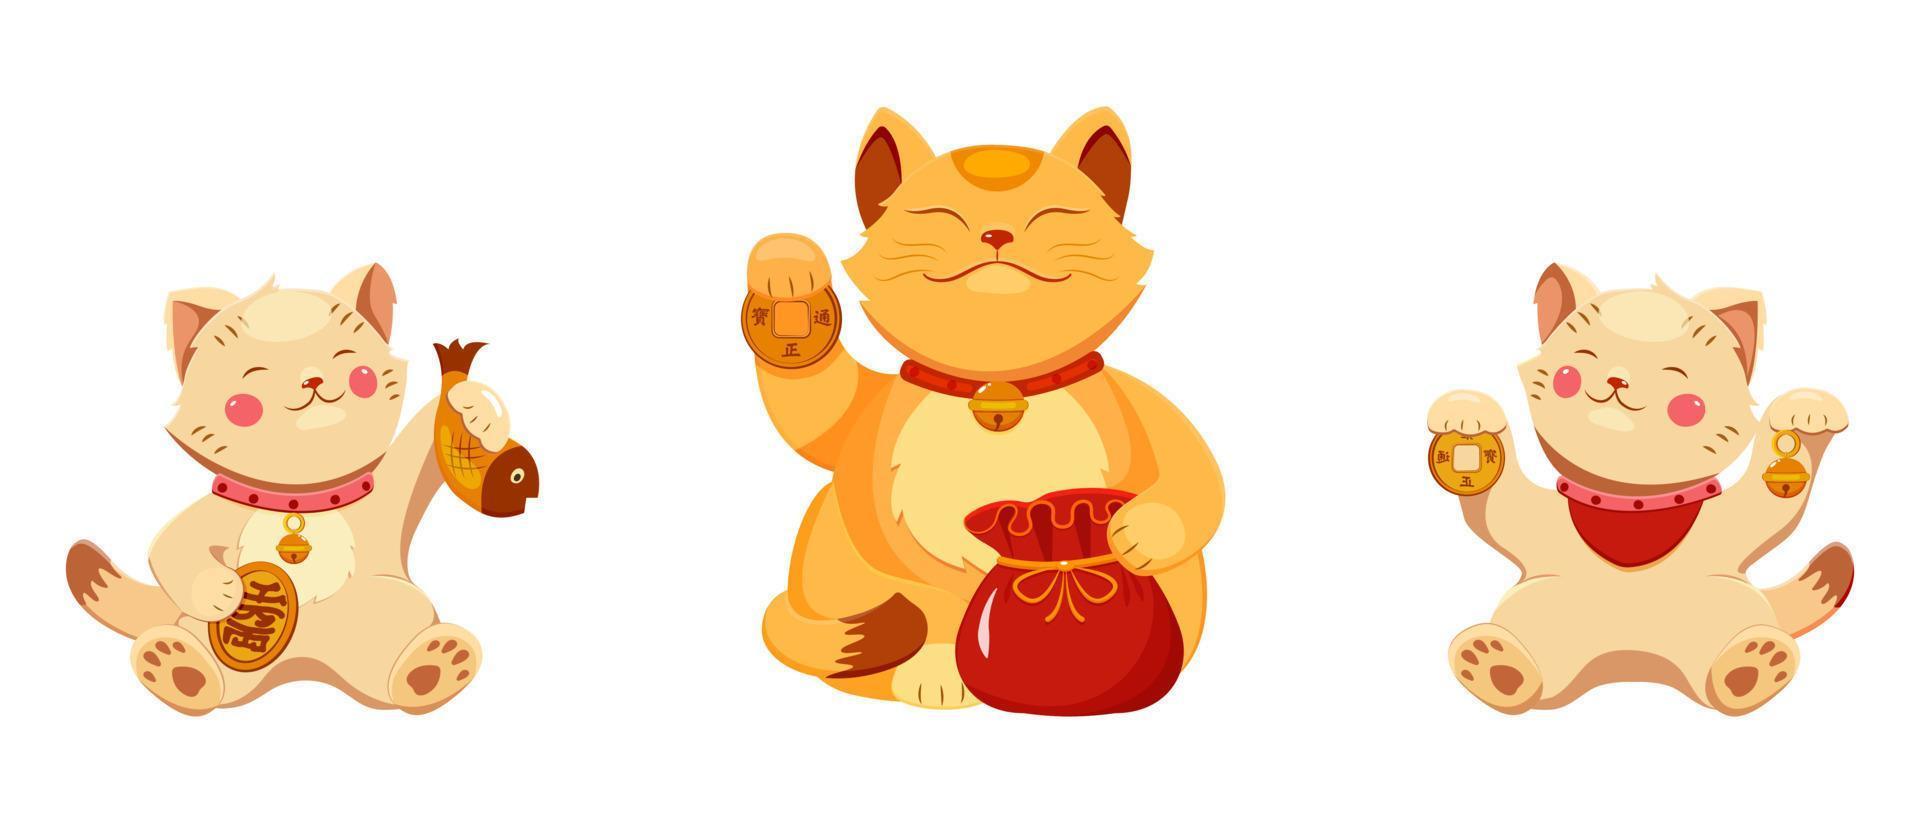 buona fortuna gatti maneko neko. illustrazione del fumetto di vettore della mascotte della ricchezza e della prosperità di affari.